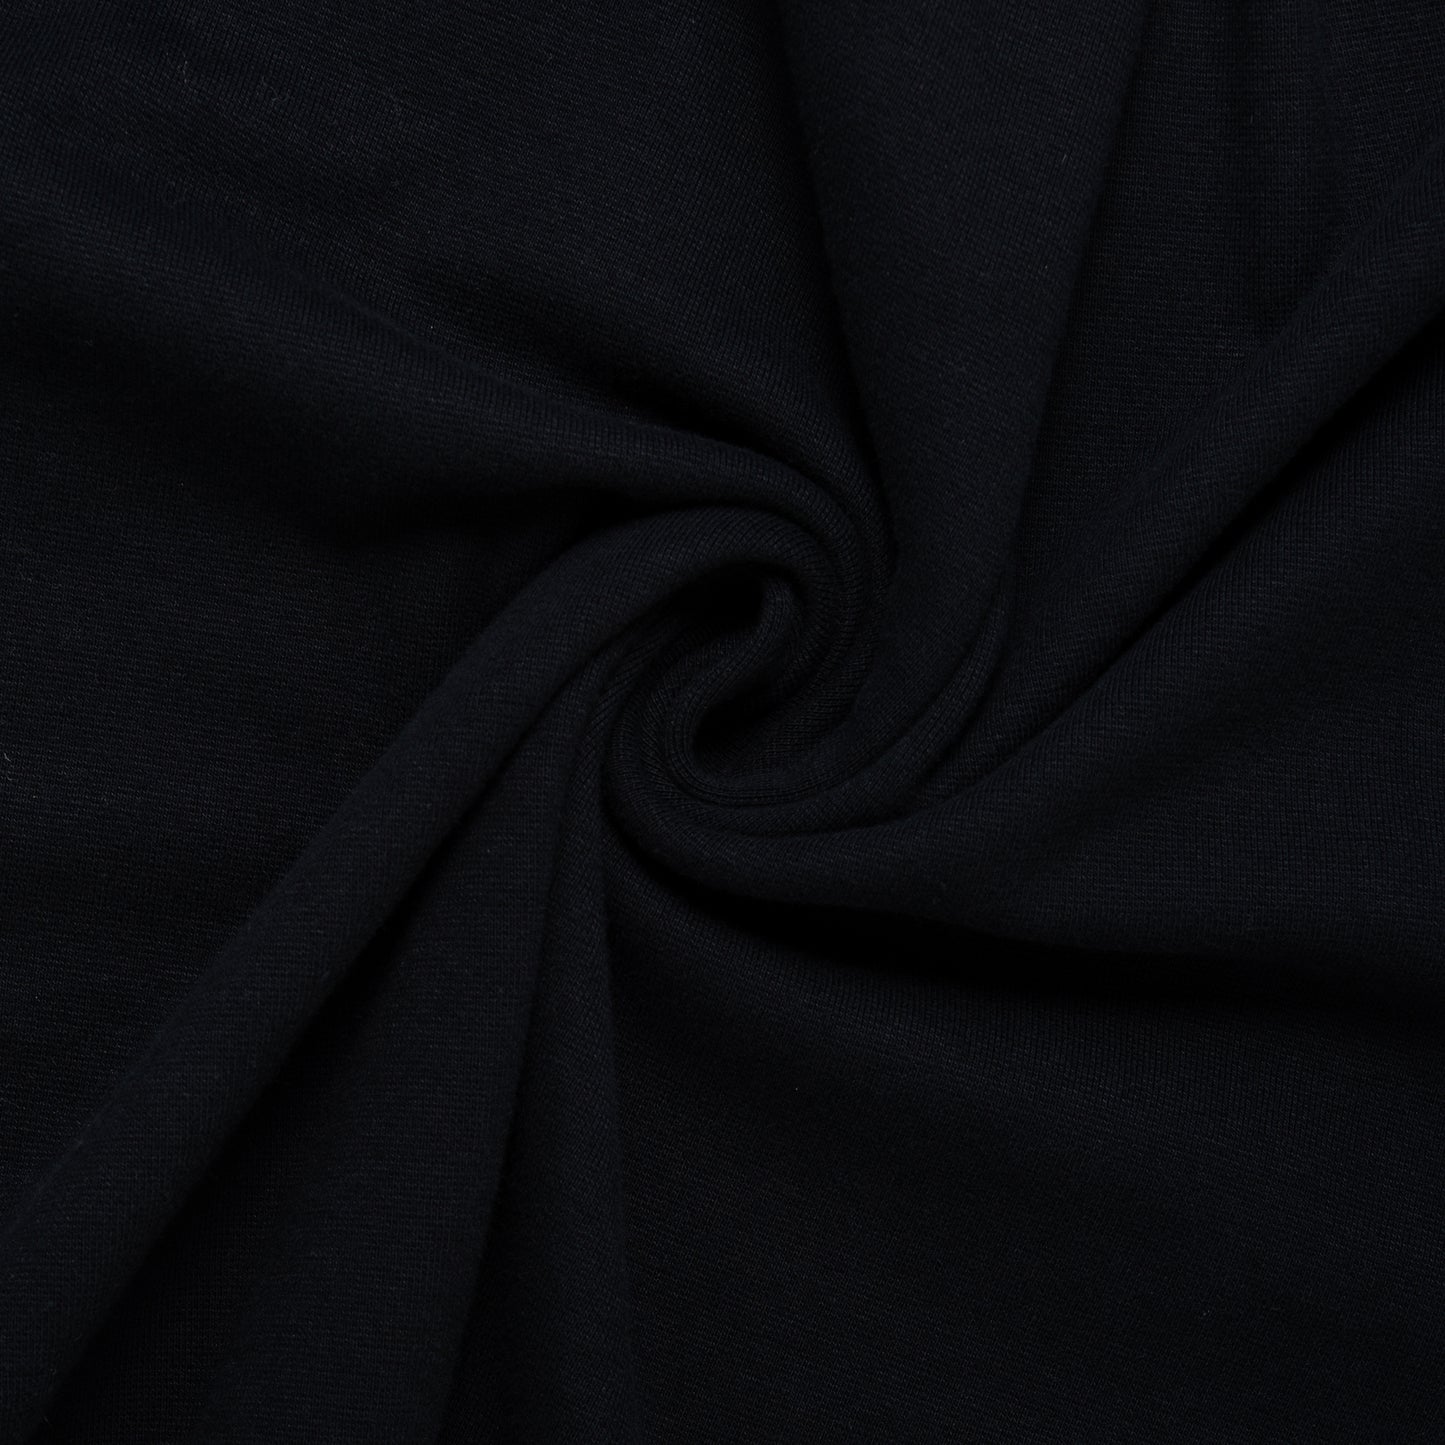 1 x 1 Tubular Rib Knit - Canadian - Black